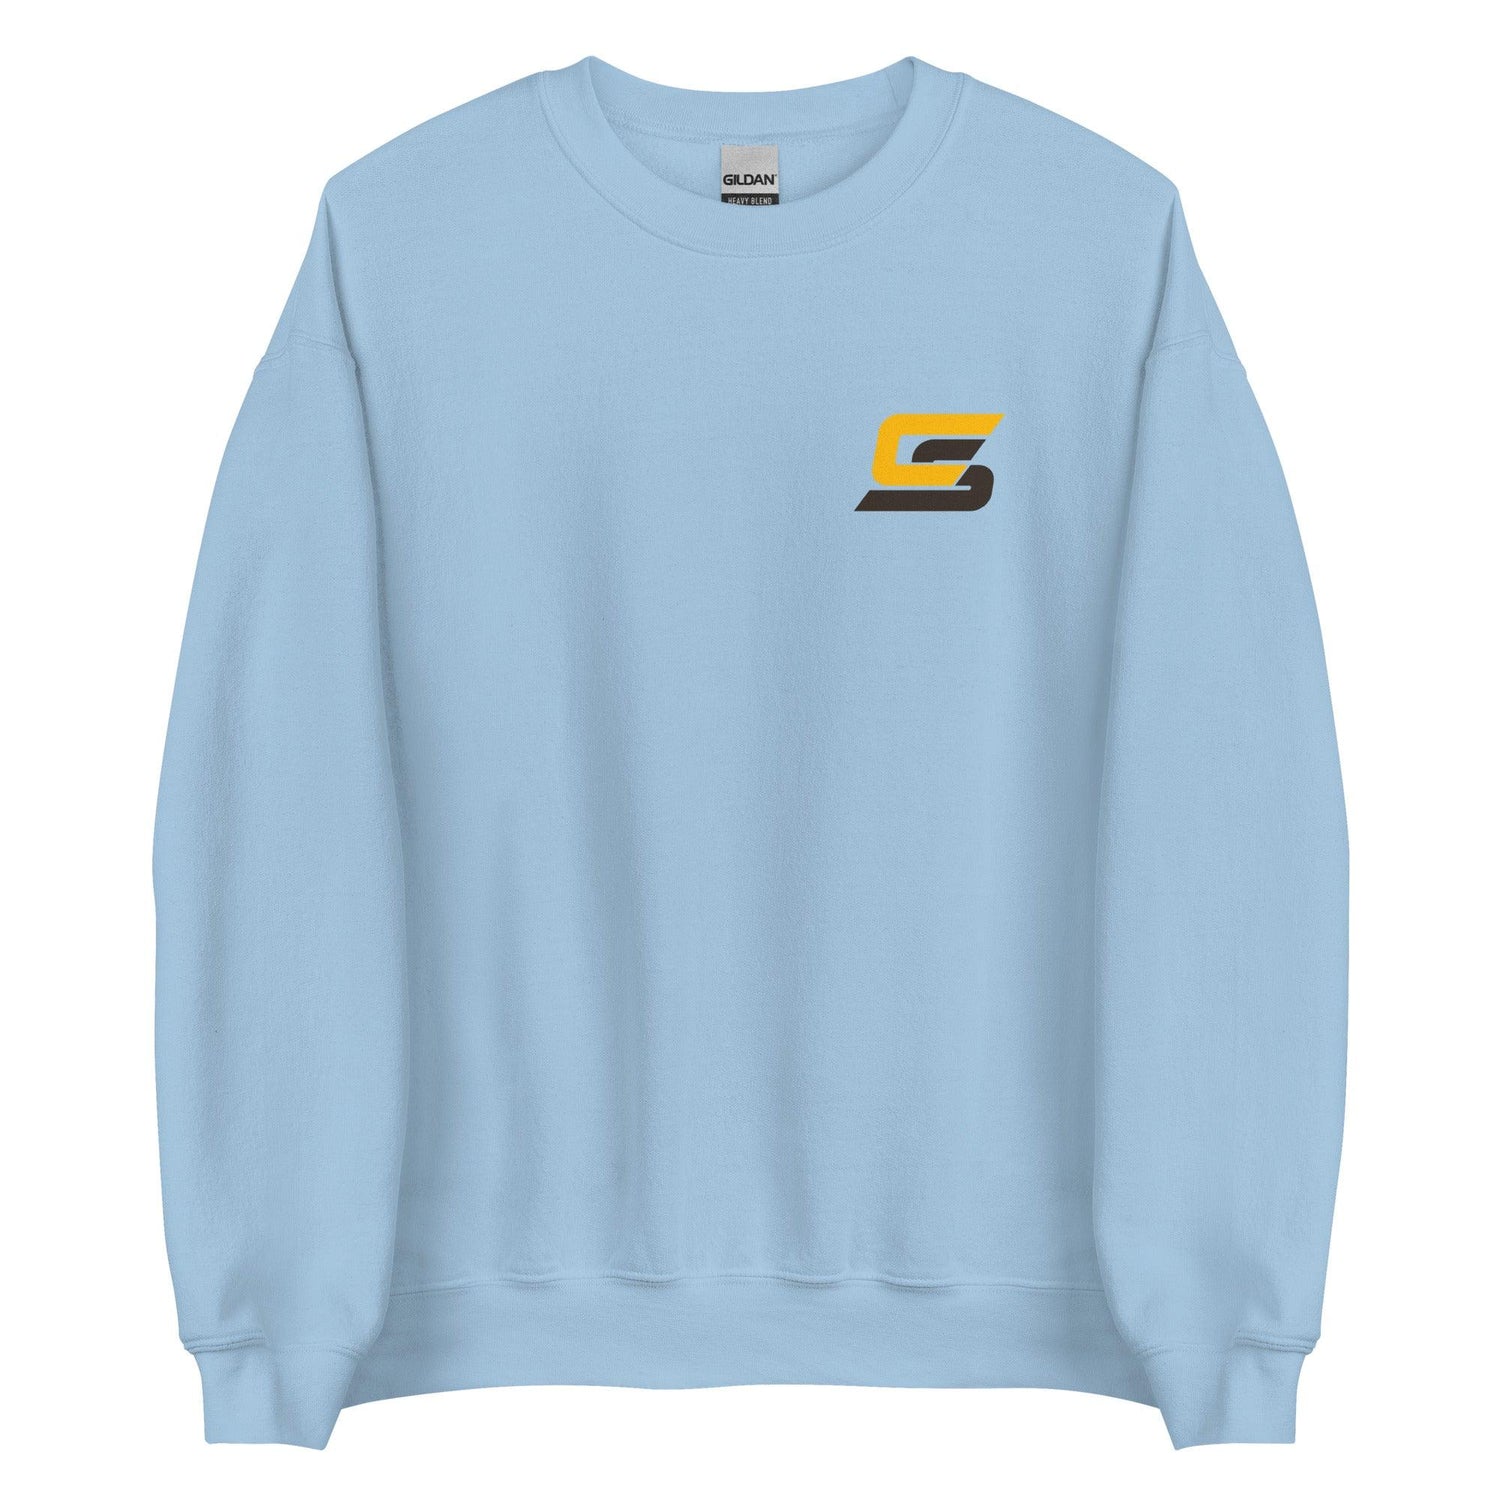 Cory Spangenberg "Elite" Sweatshirt - Fan Arch